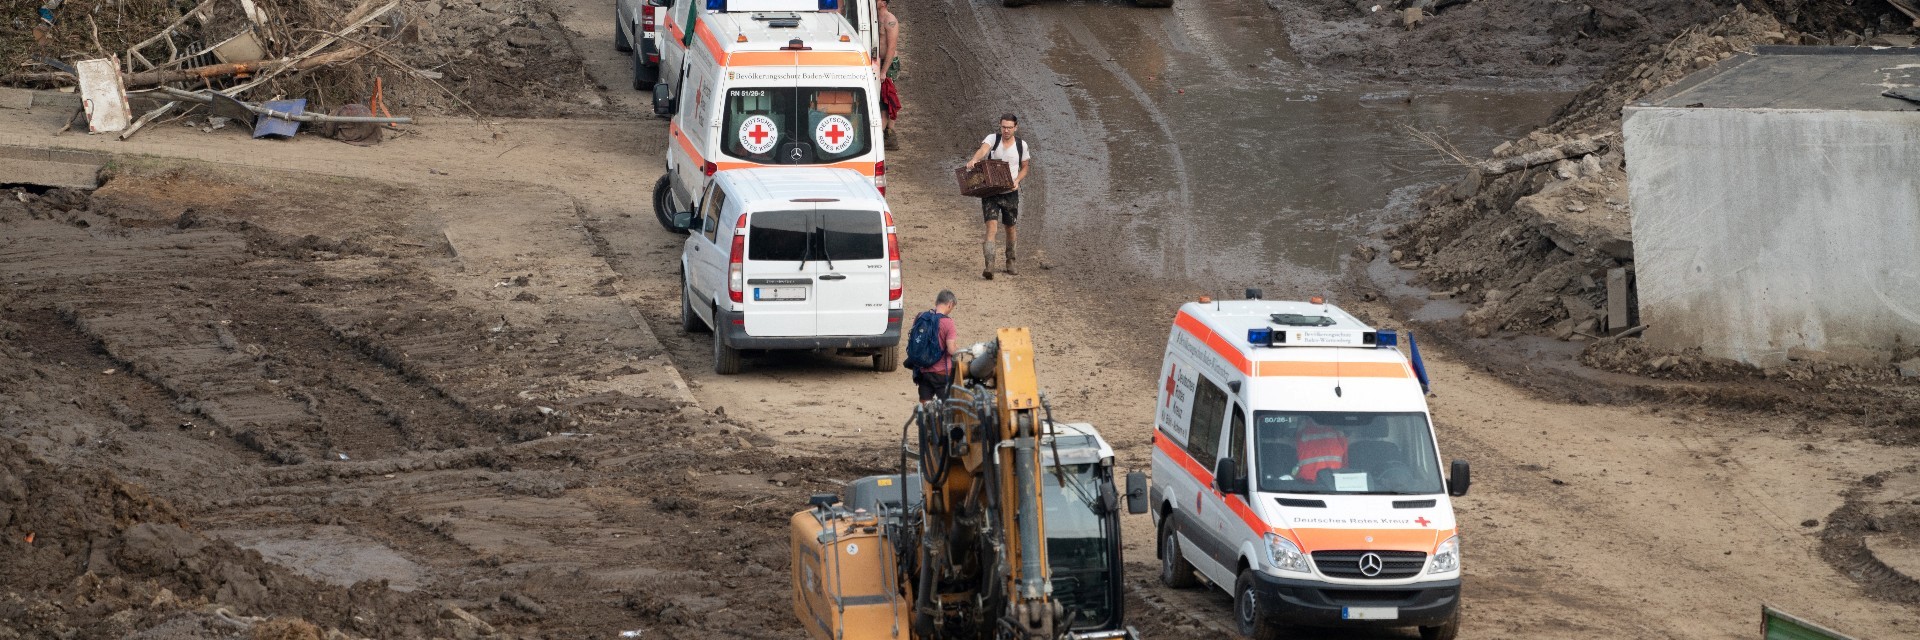 Foto: Einsatz des DRK bei der Hochwasserkatastrophe in Rheinland-Pfalz